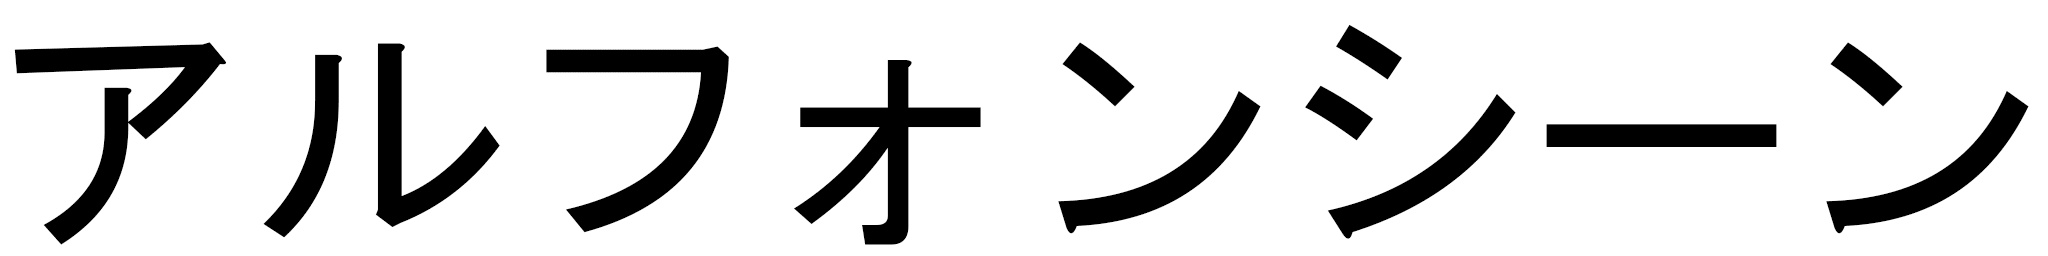 Alphonsine en japonais